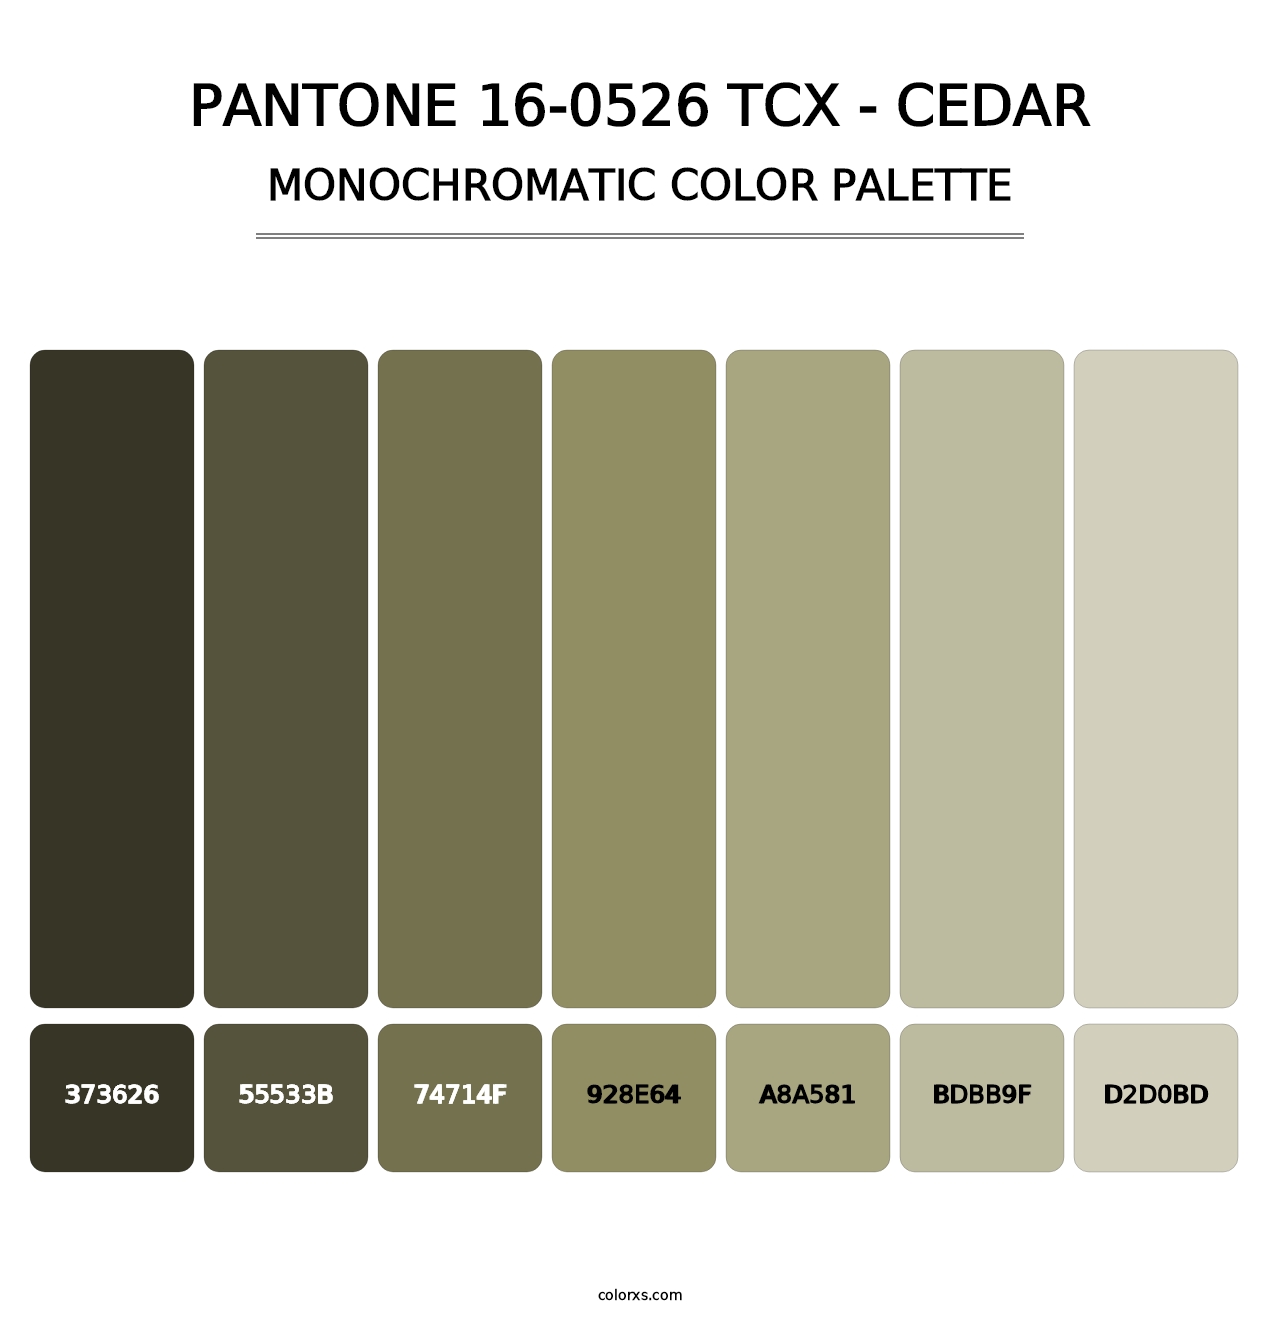 PANTONE 16-0526 TCX - Cedar - Monochromatic Color Palette